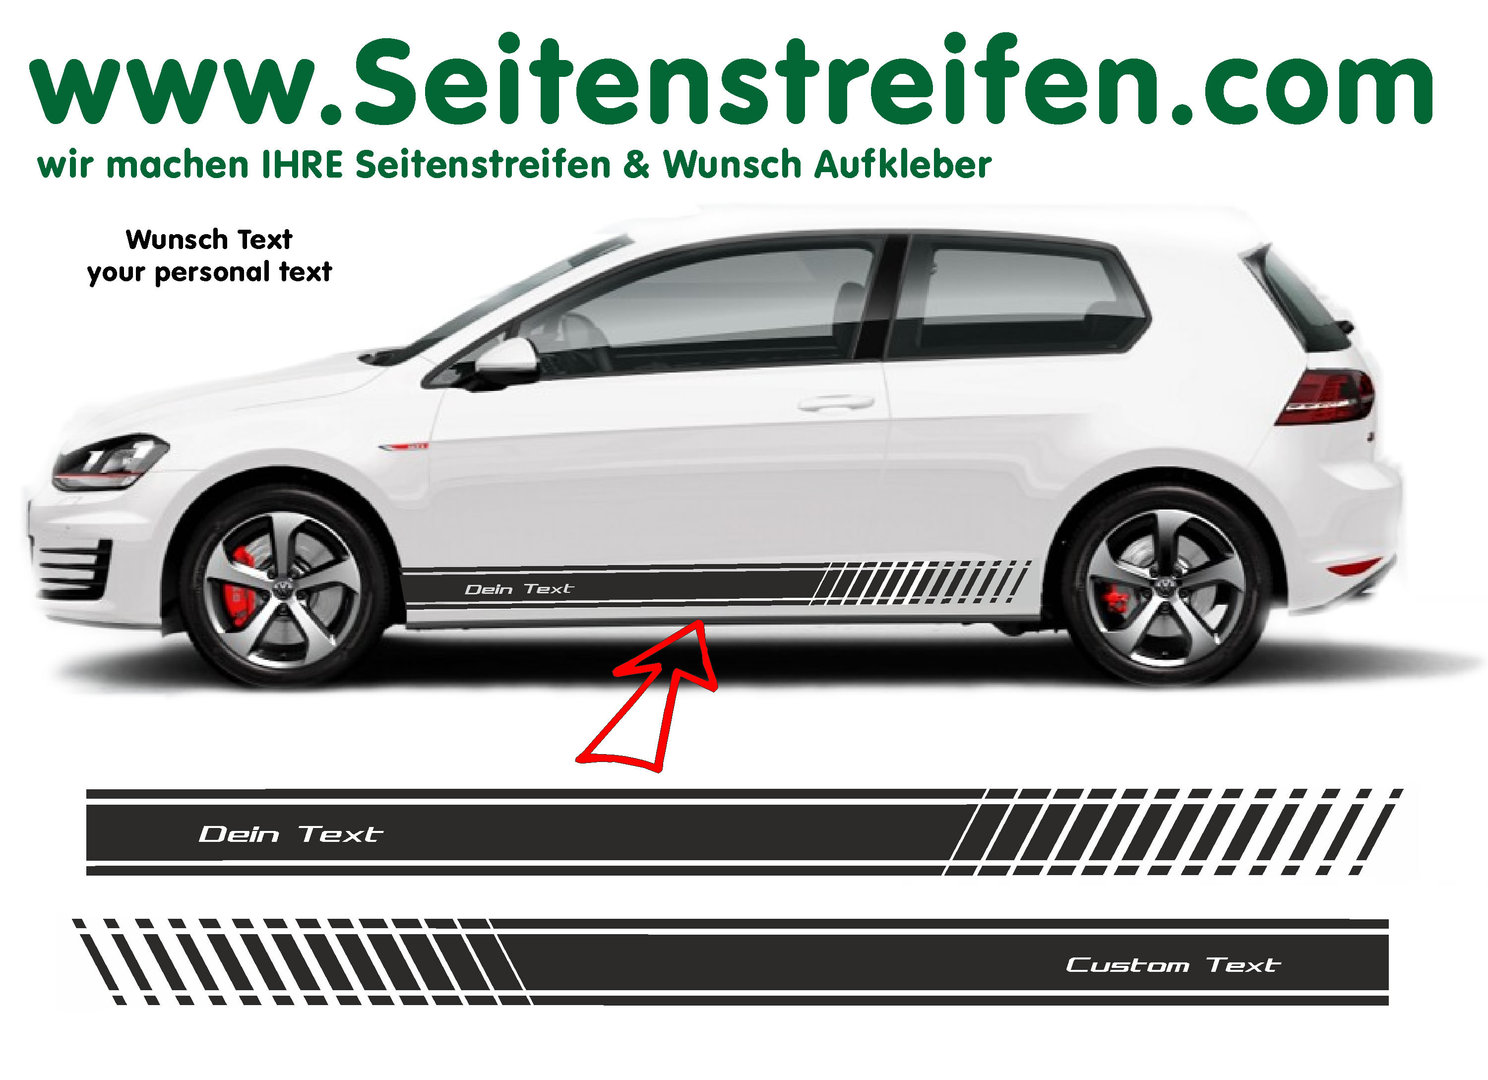 VW Golf Wunsch Text EVO Seitenstreifen Aufkleber Set für 3+4 Türer - Art. Nr.: 8513